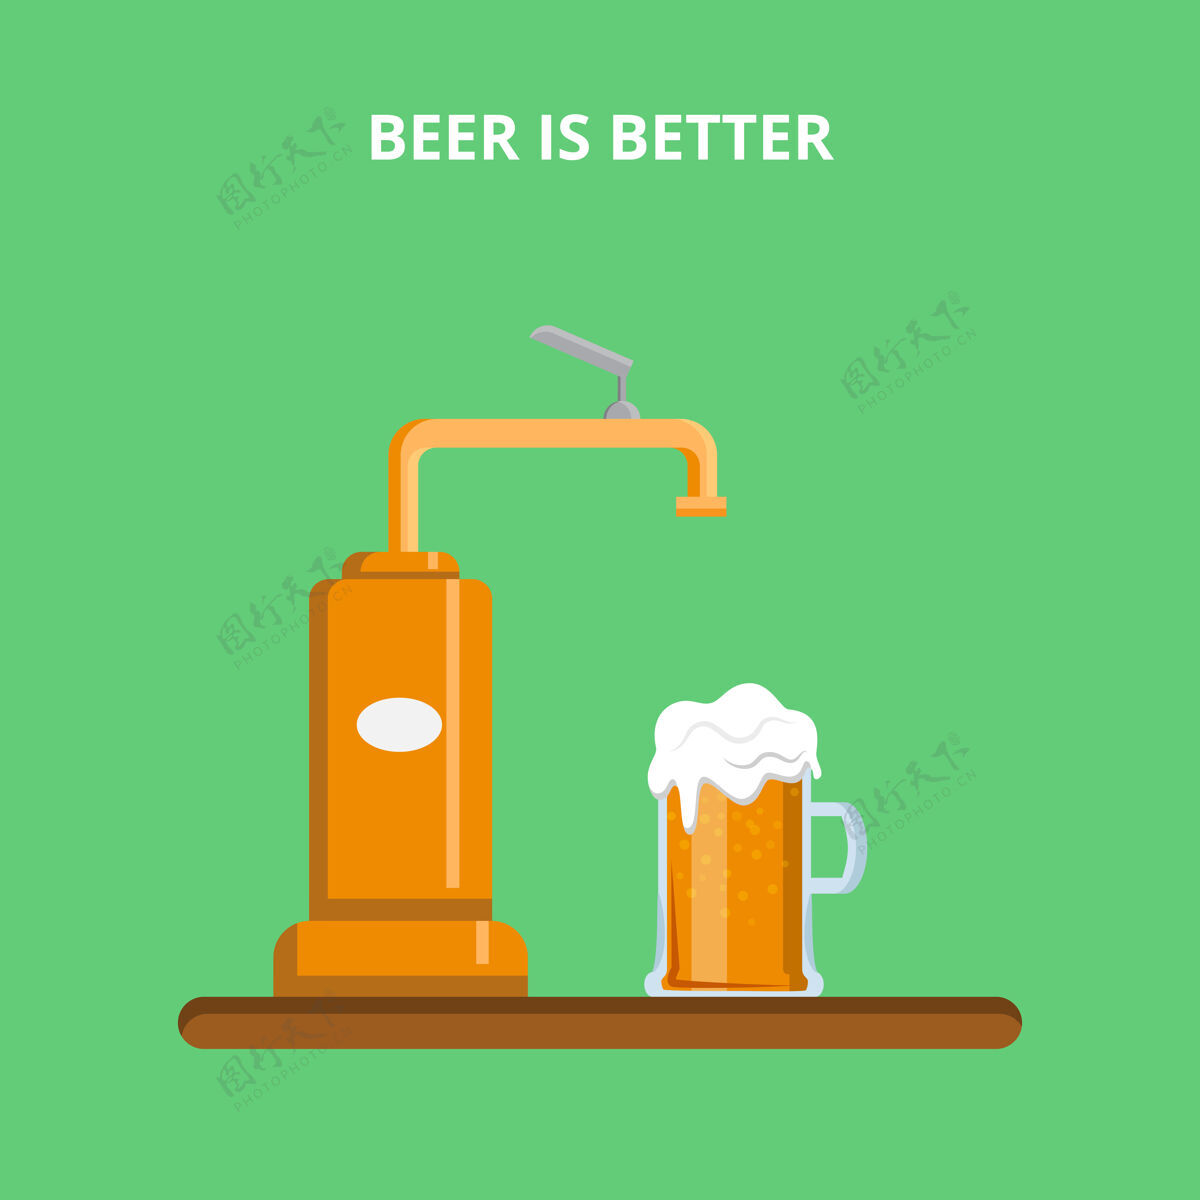 机器啤酒倒瓶机啤酒是更好的概念网站插图摘要酒吧食品